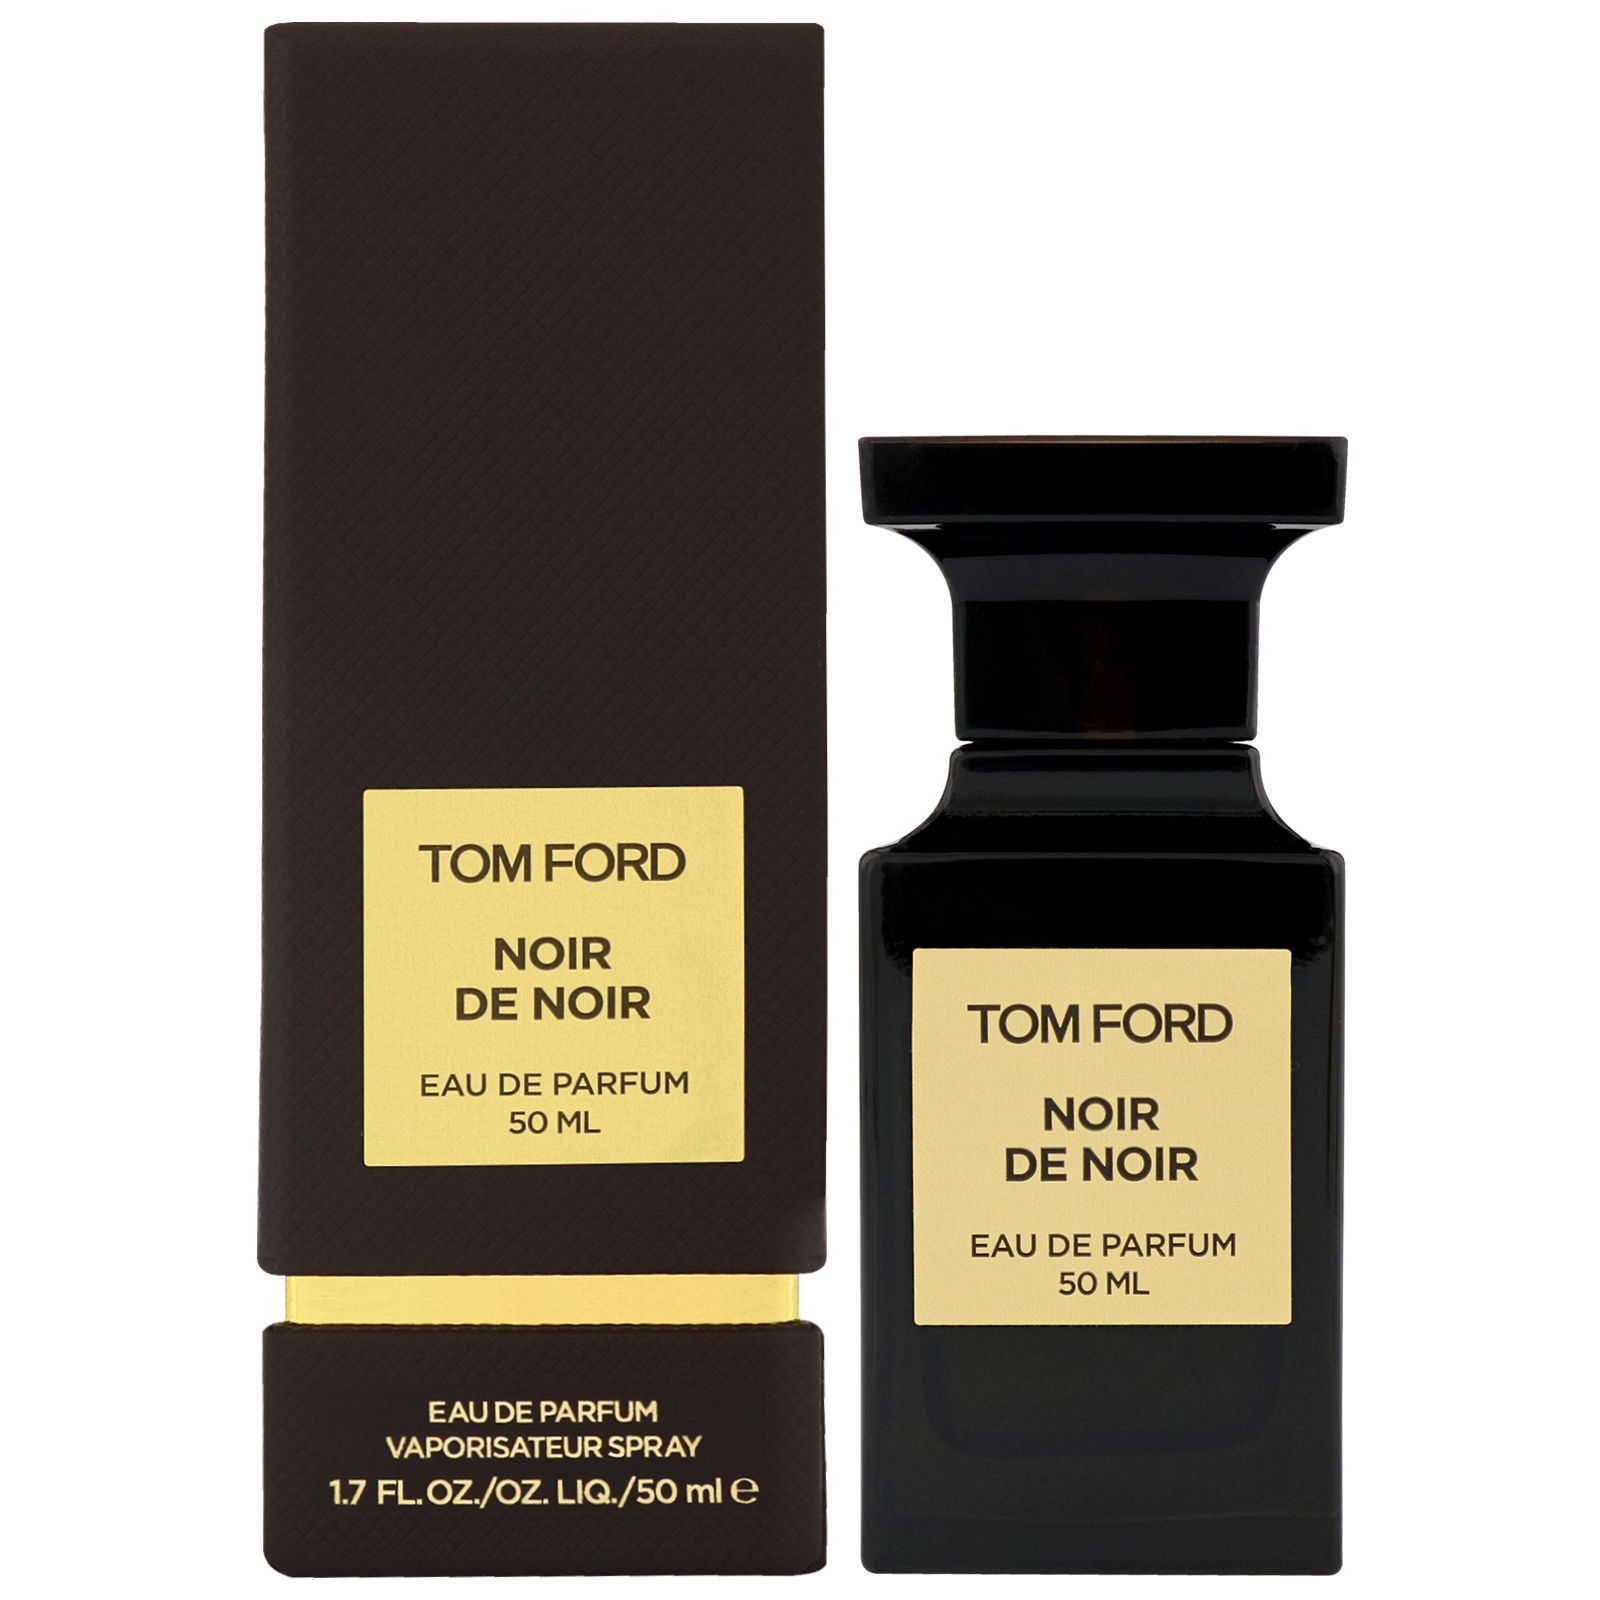 Marcolinia | Buy Tom Ford Noir De Noir Eau de Parfum 50mL online